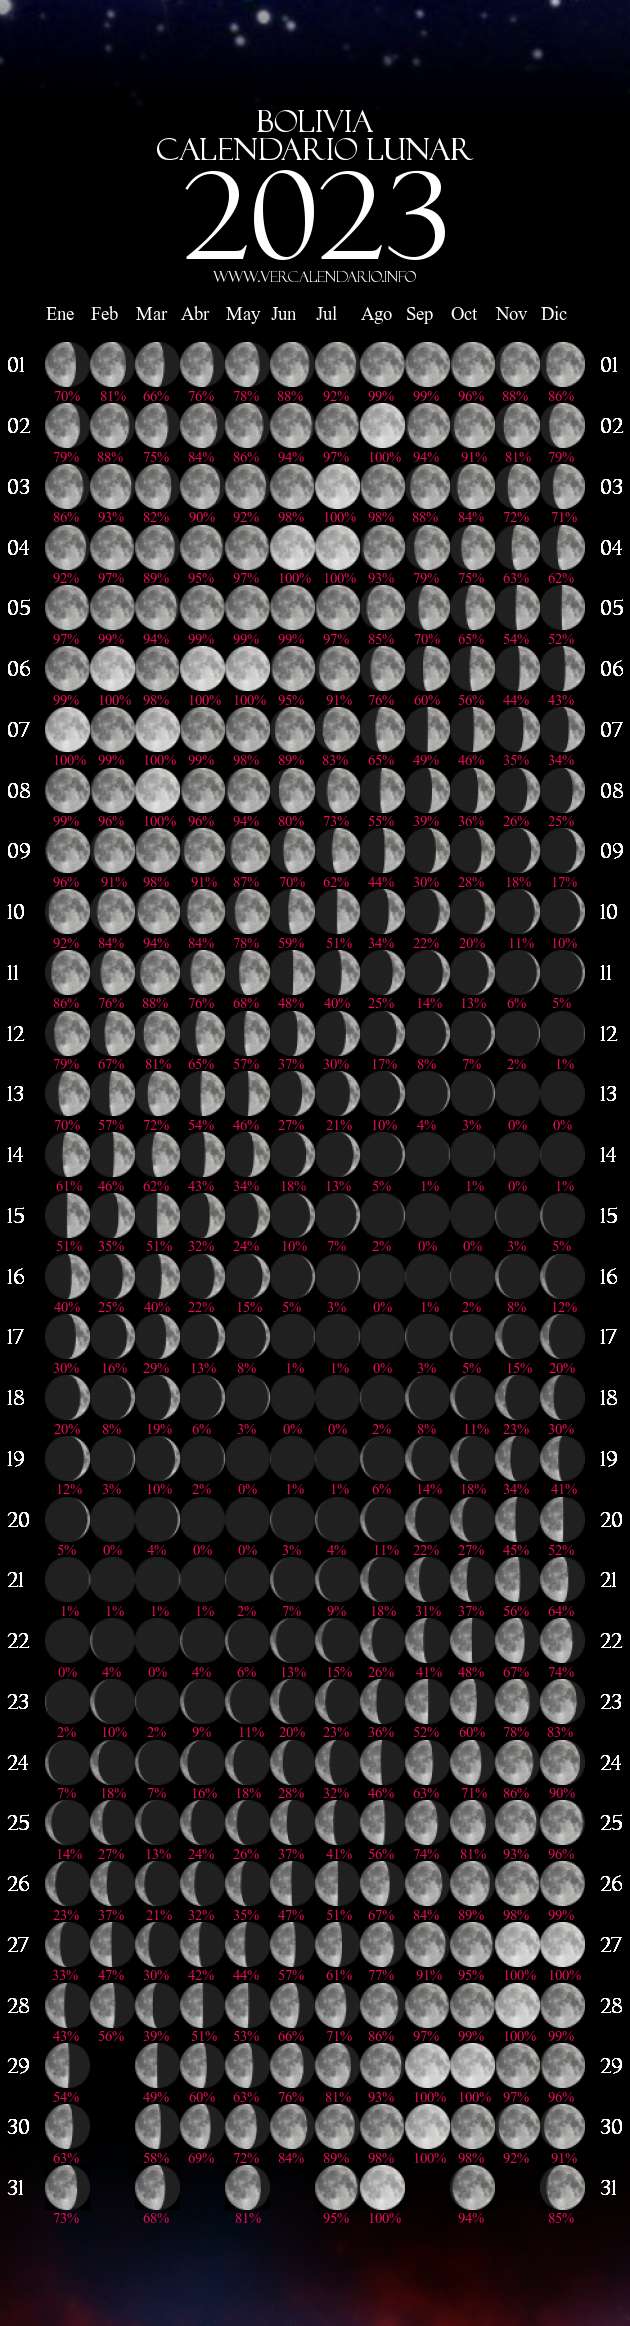 Calendario Lunar 2023 (Bolivia)